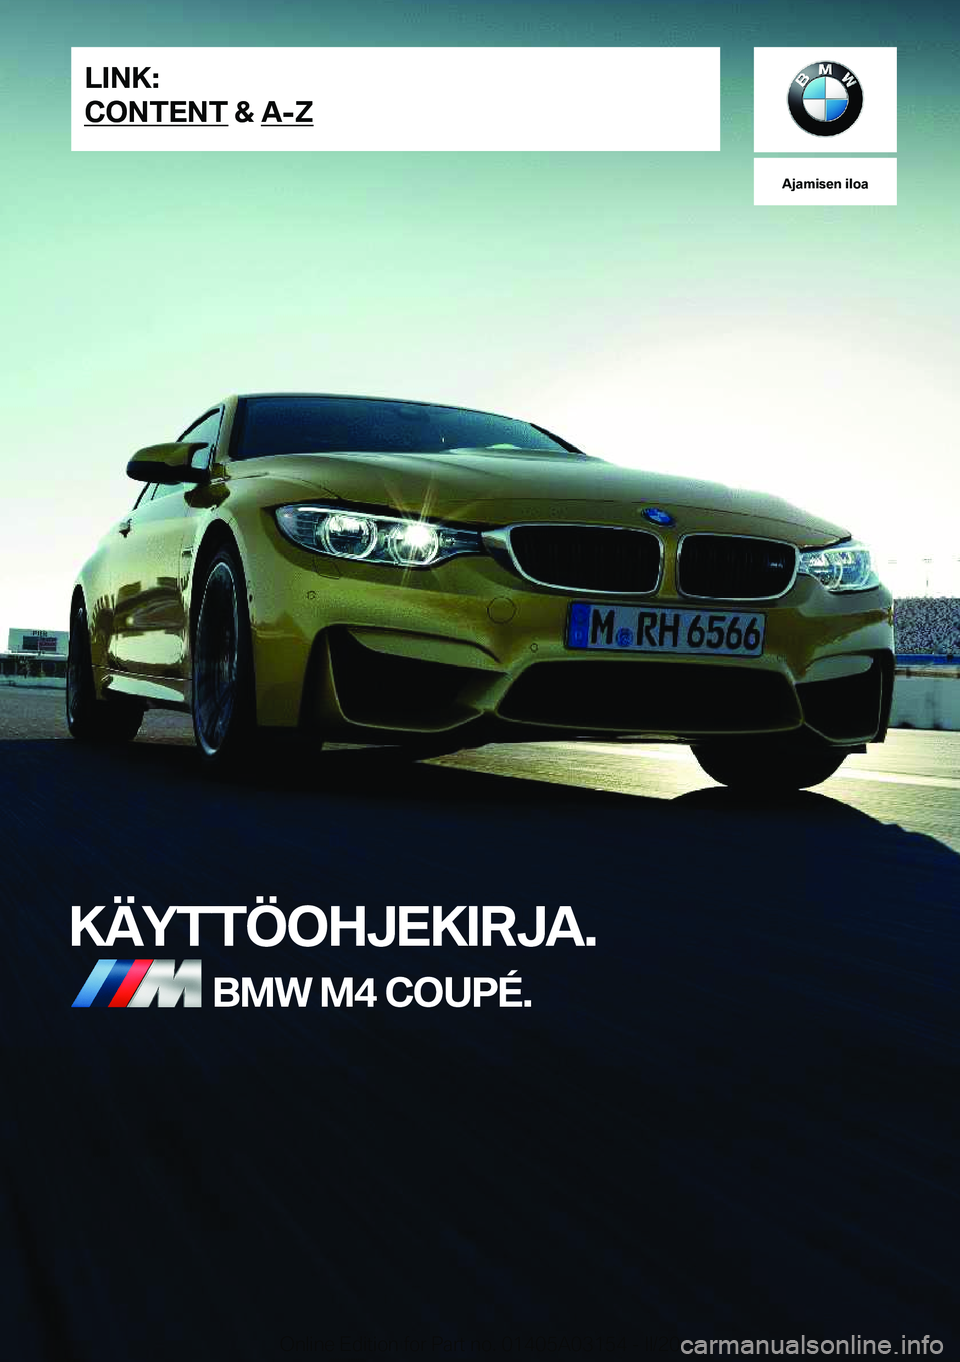 BMW M4 2020  Omistajan Käsikirja (in Finnish) �A�j�a�m�i�s�e�n��i�l�o�a
�K�